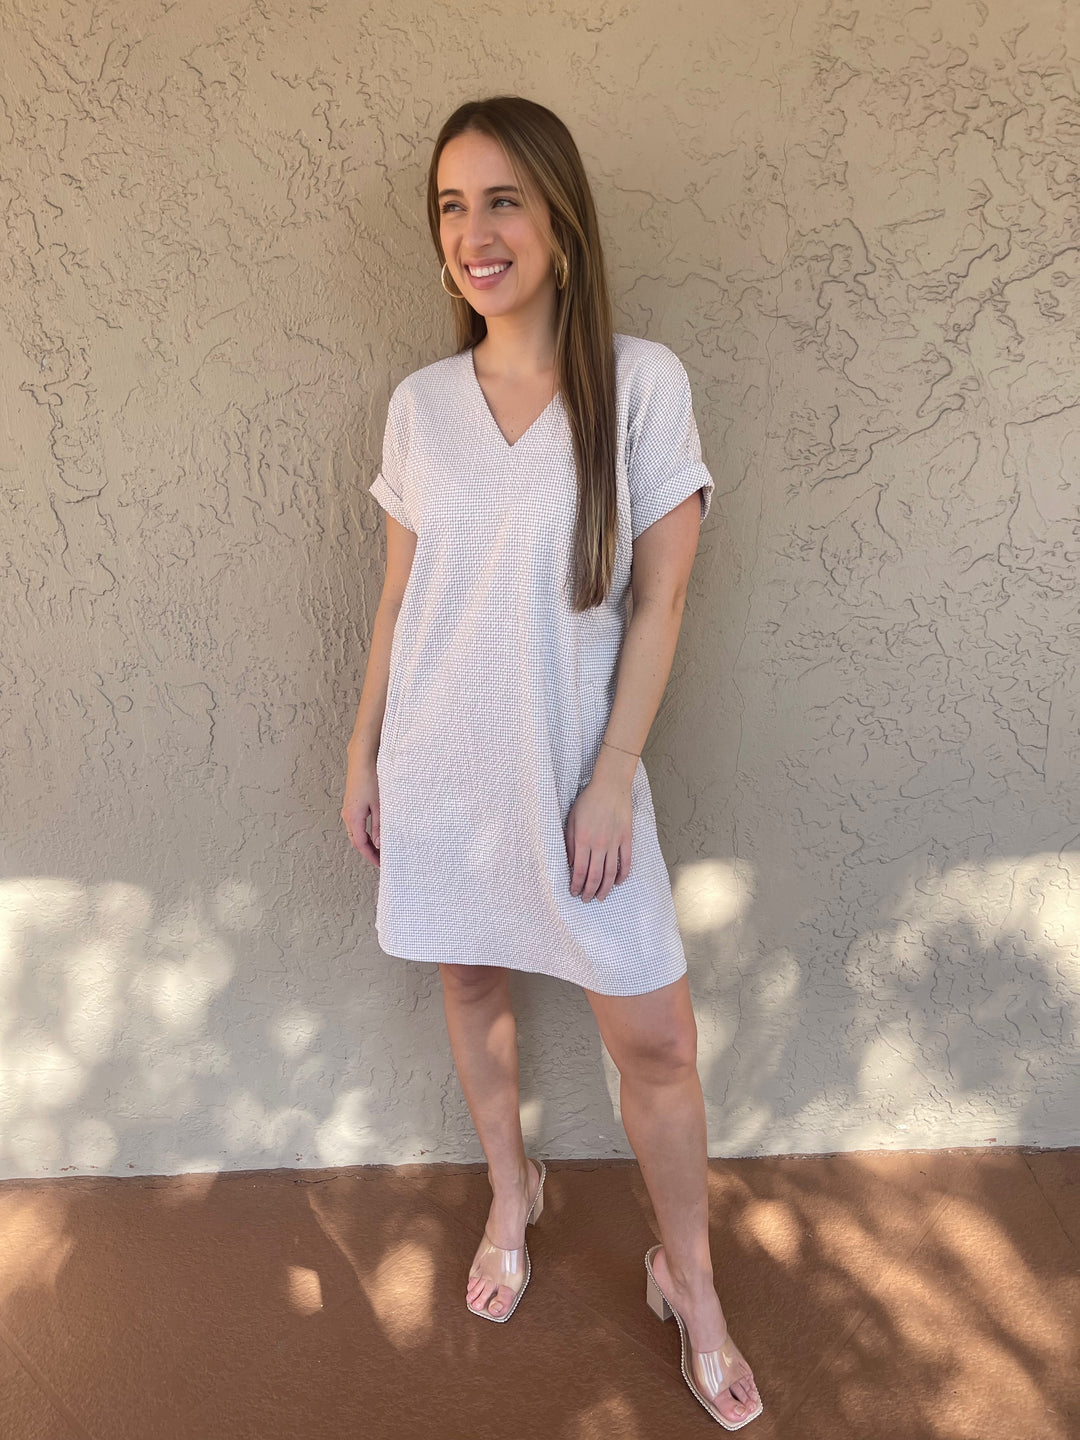 Peace of cloth Lexie Dress - Tan